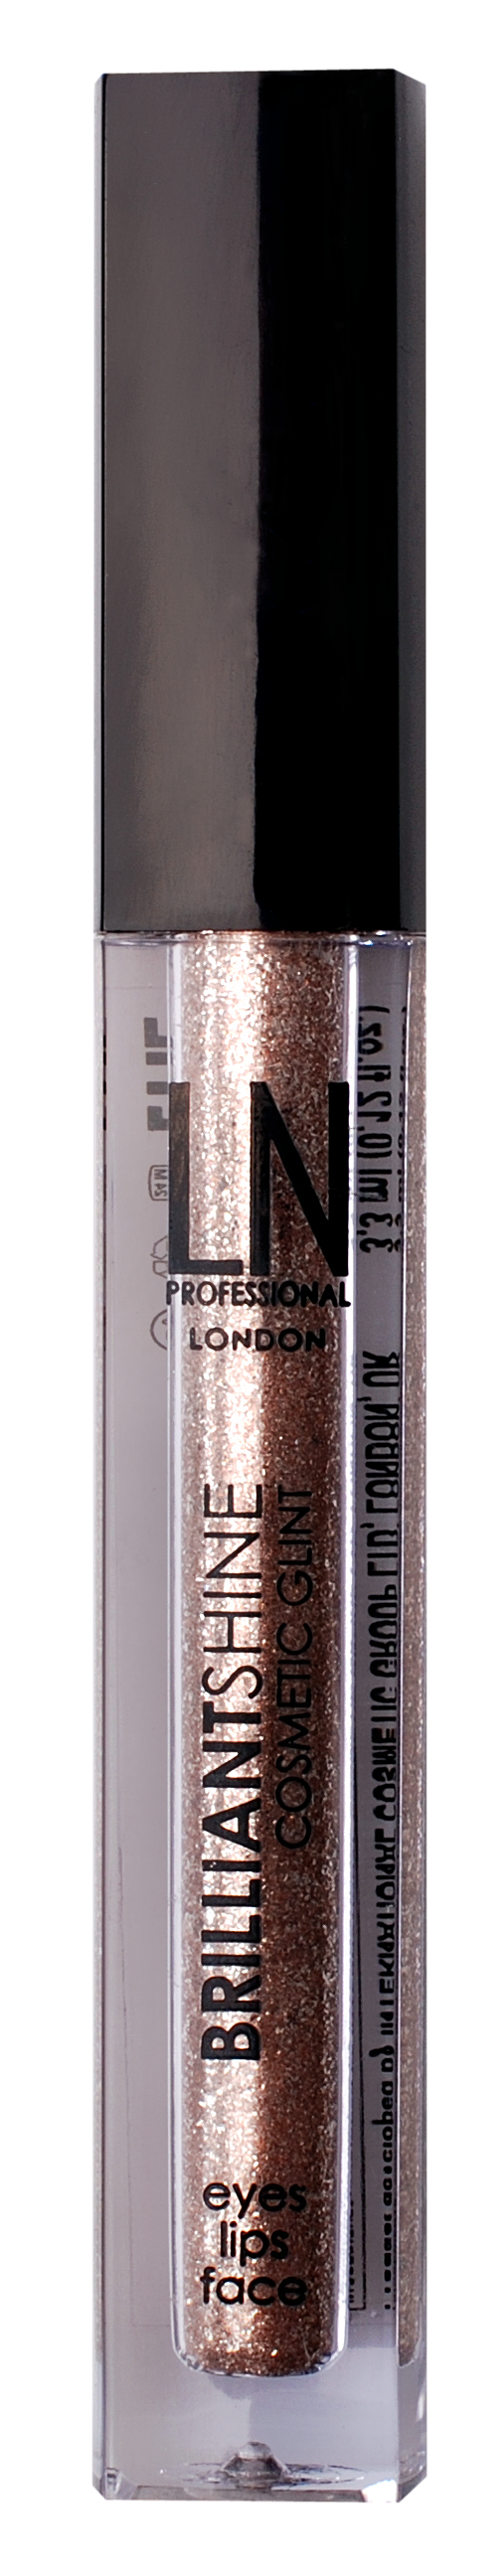 Рідкий глітер для макіяжу LN Professional Brilliantshine Cosmetic Glint, відтінок 03, 3,3 мл - фото 1